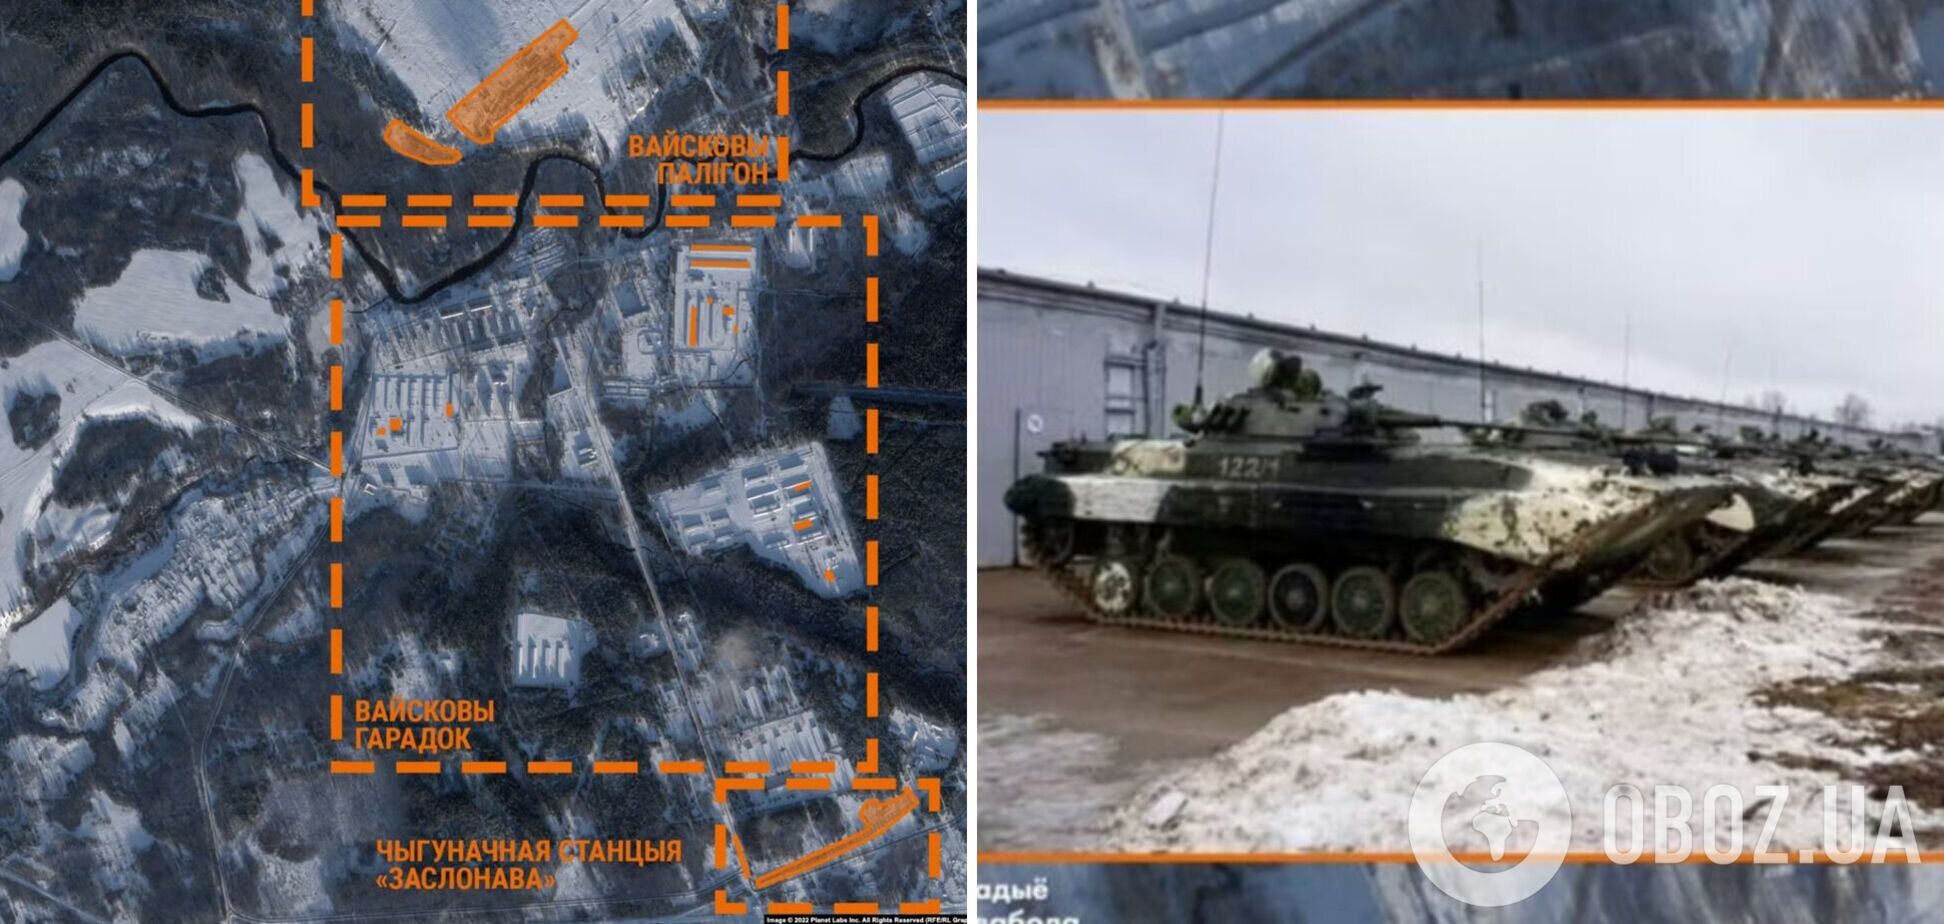 Появились спутниковые снимки полигона в Беларуси, где дислоцируются российские военные: туда стянули много техники